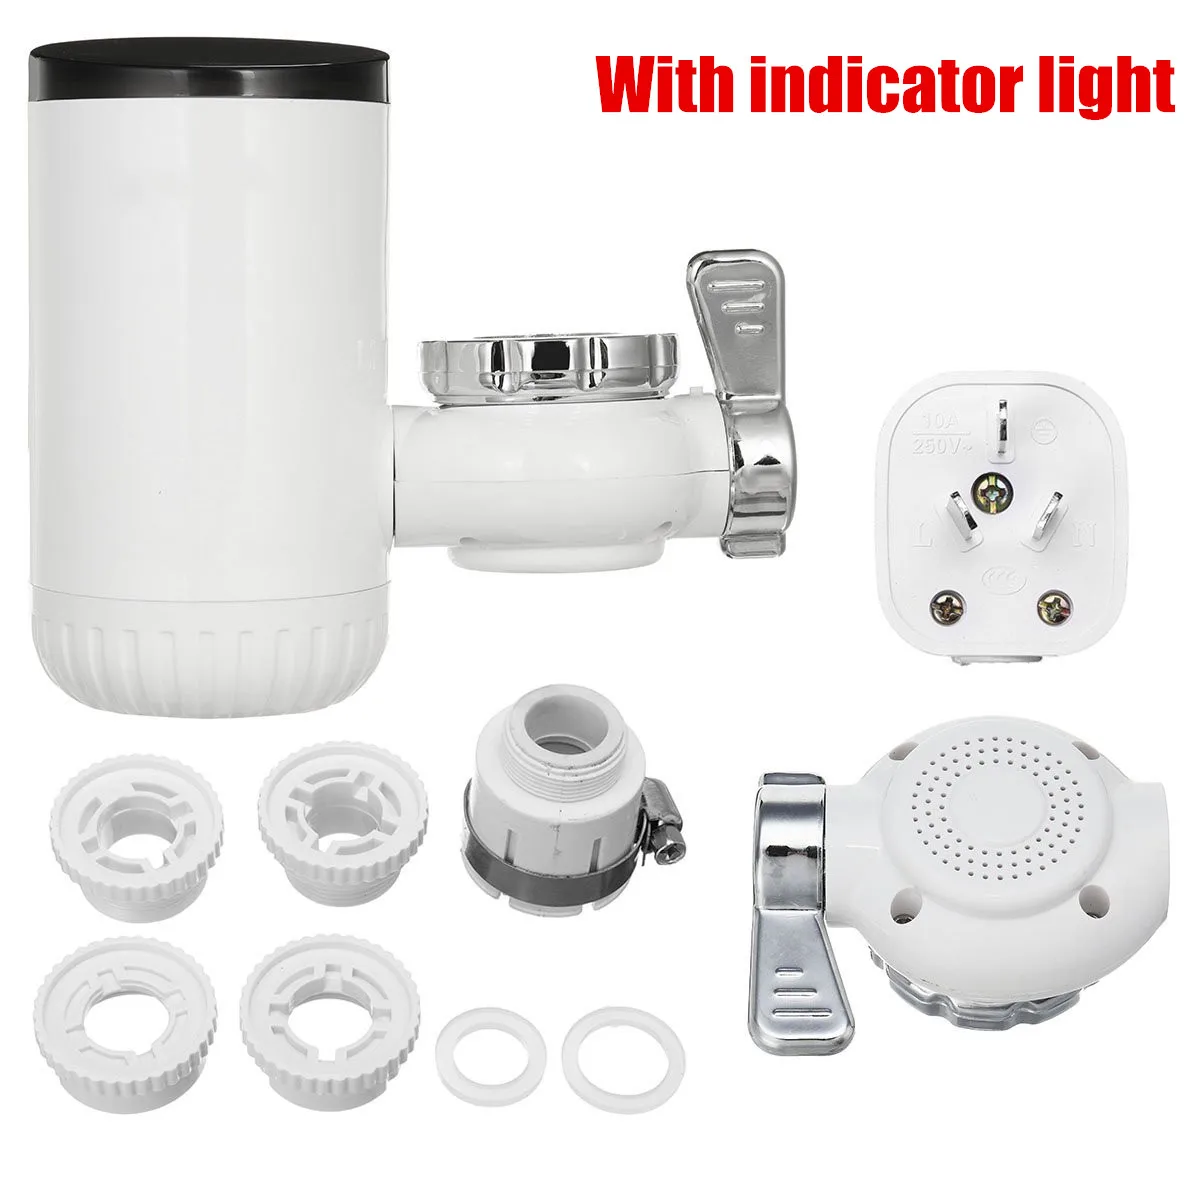 Мгновенный кран для горячей воды электрический кухонный водонагреватель кран водонагревателя холодного нагрева кран безрезервуарный Мгновенный водонагреватель - Цвет: Indicator light